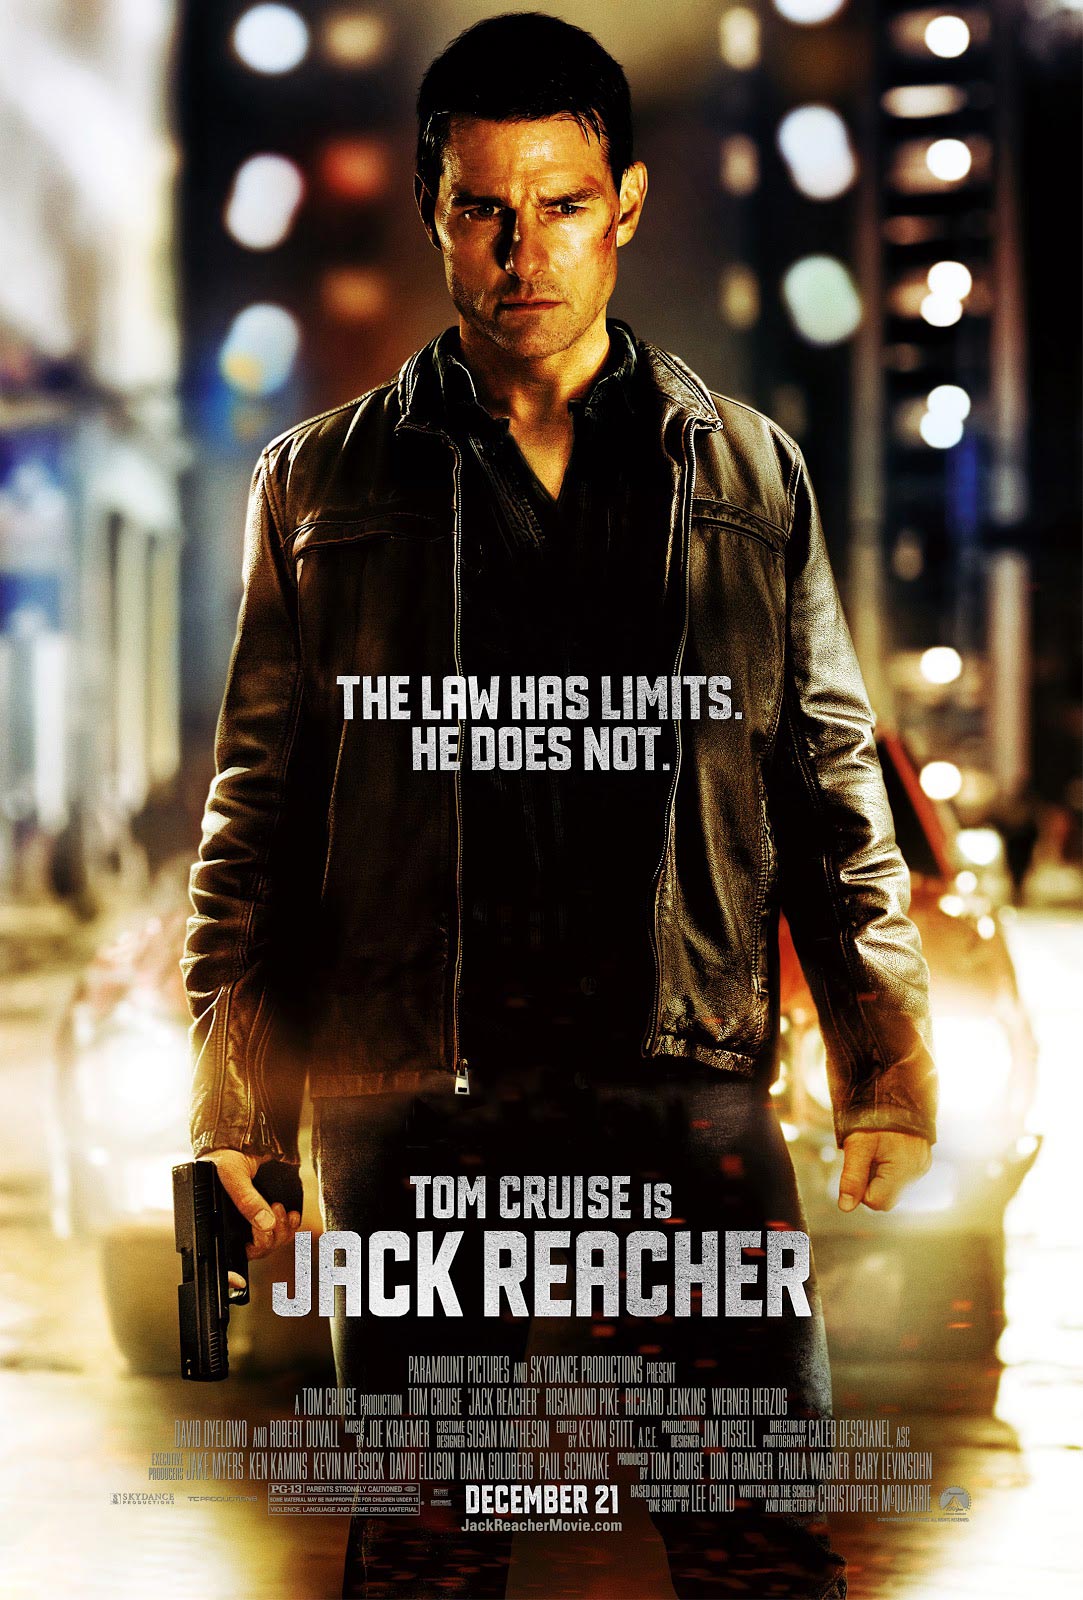 http://www.mediamikes.com/wp-content/uploads/2012/12/02/Jack-Reacher-Poster.jpg